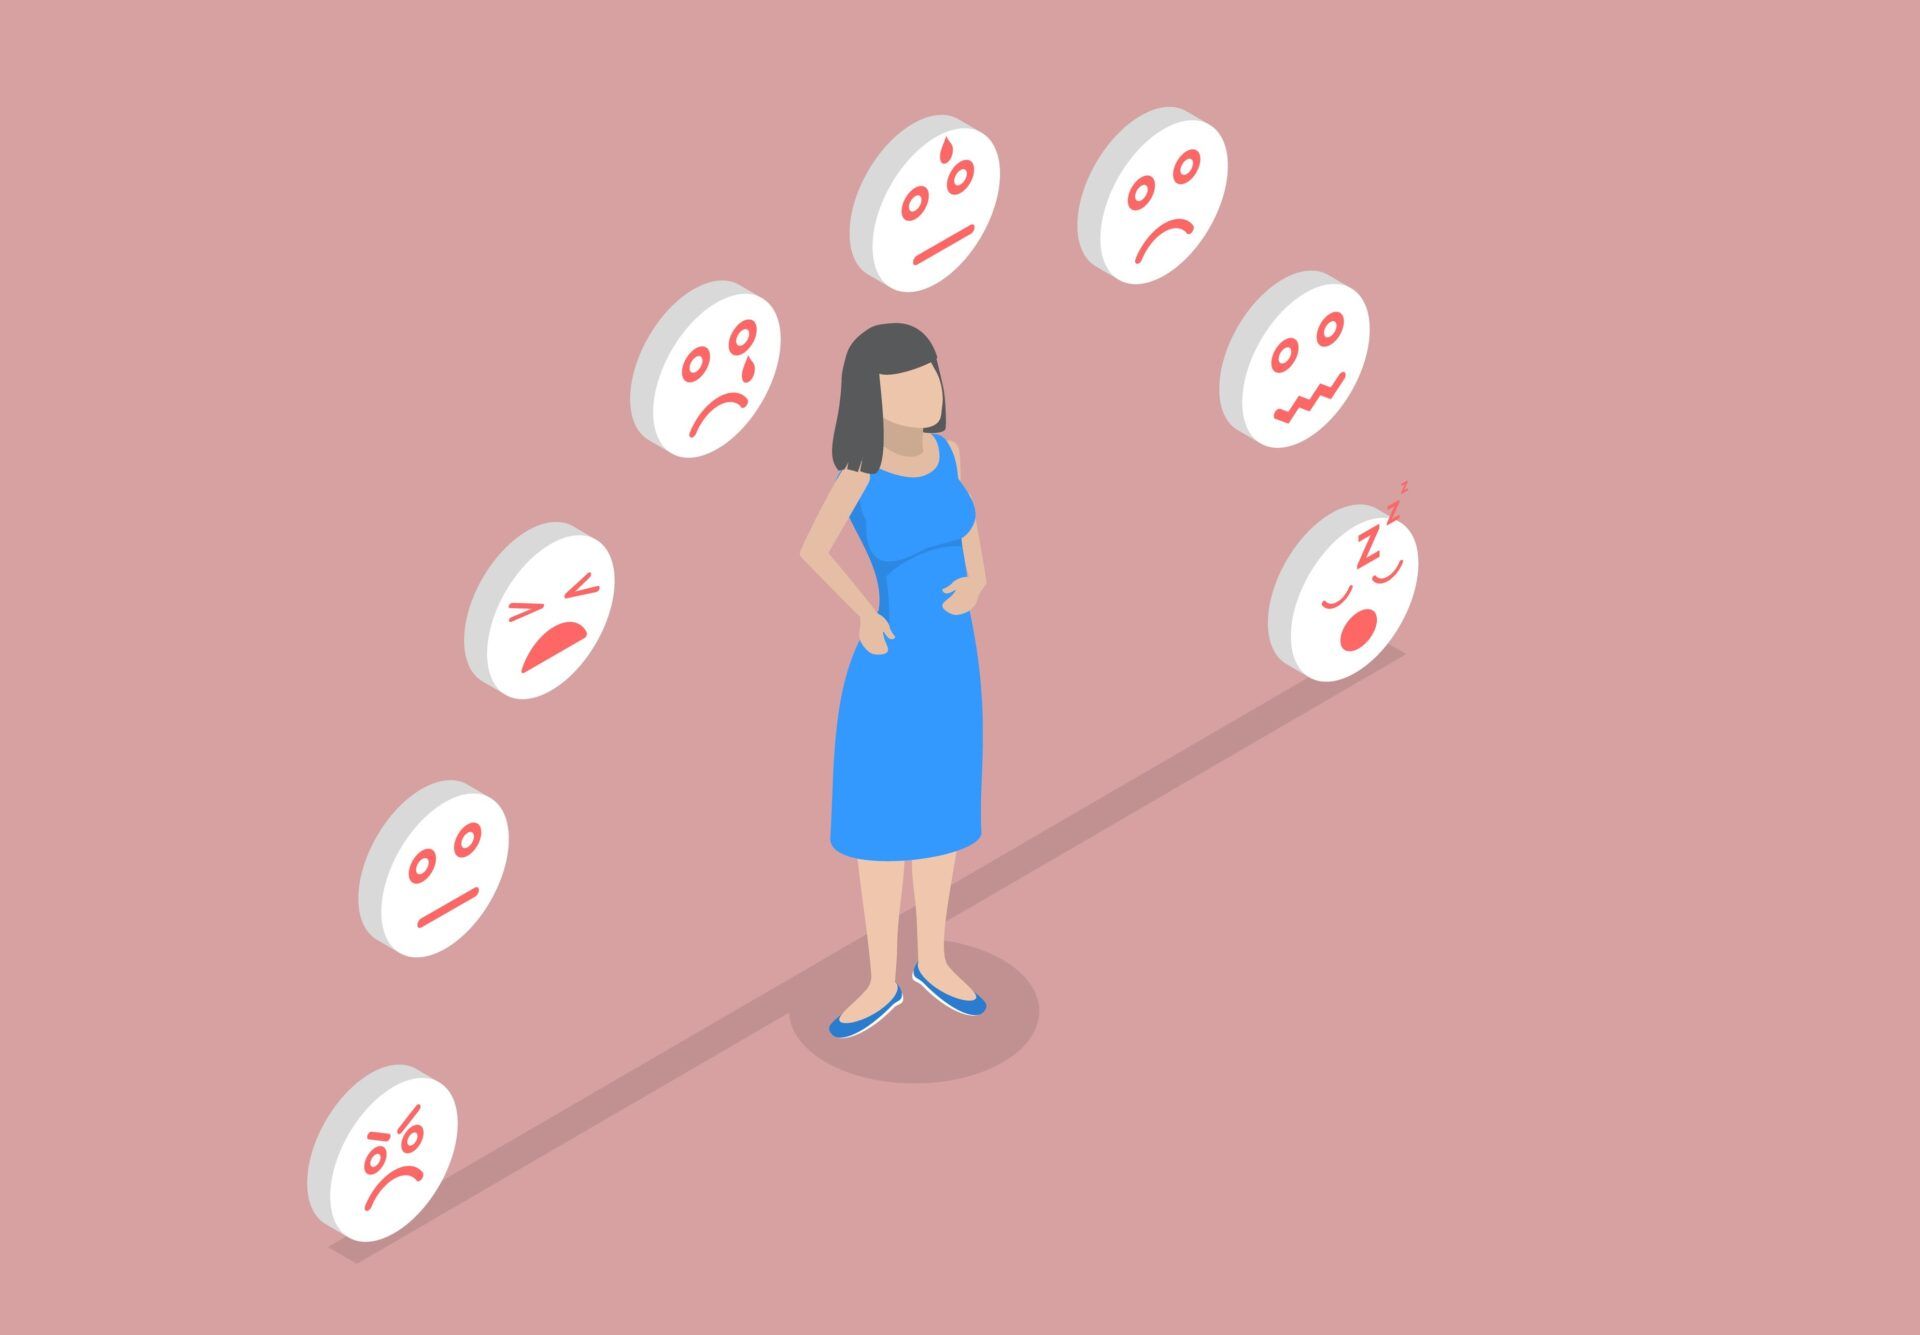 Illustratie (kleur) persoon met daarboven emoji's met verschillende emoties